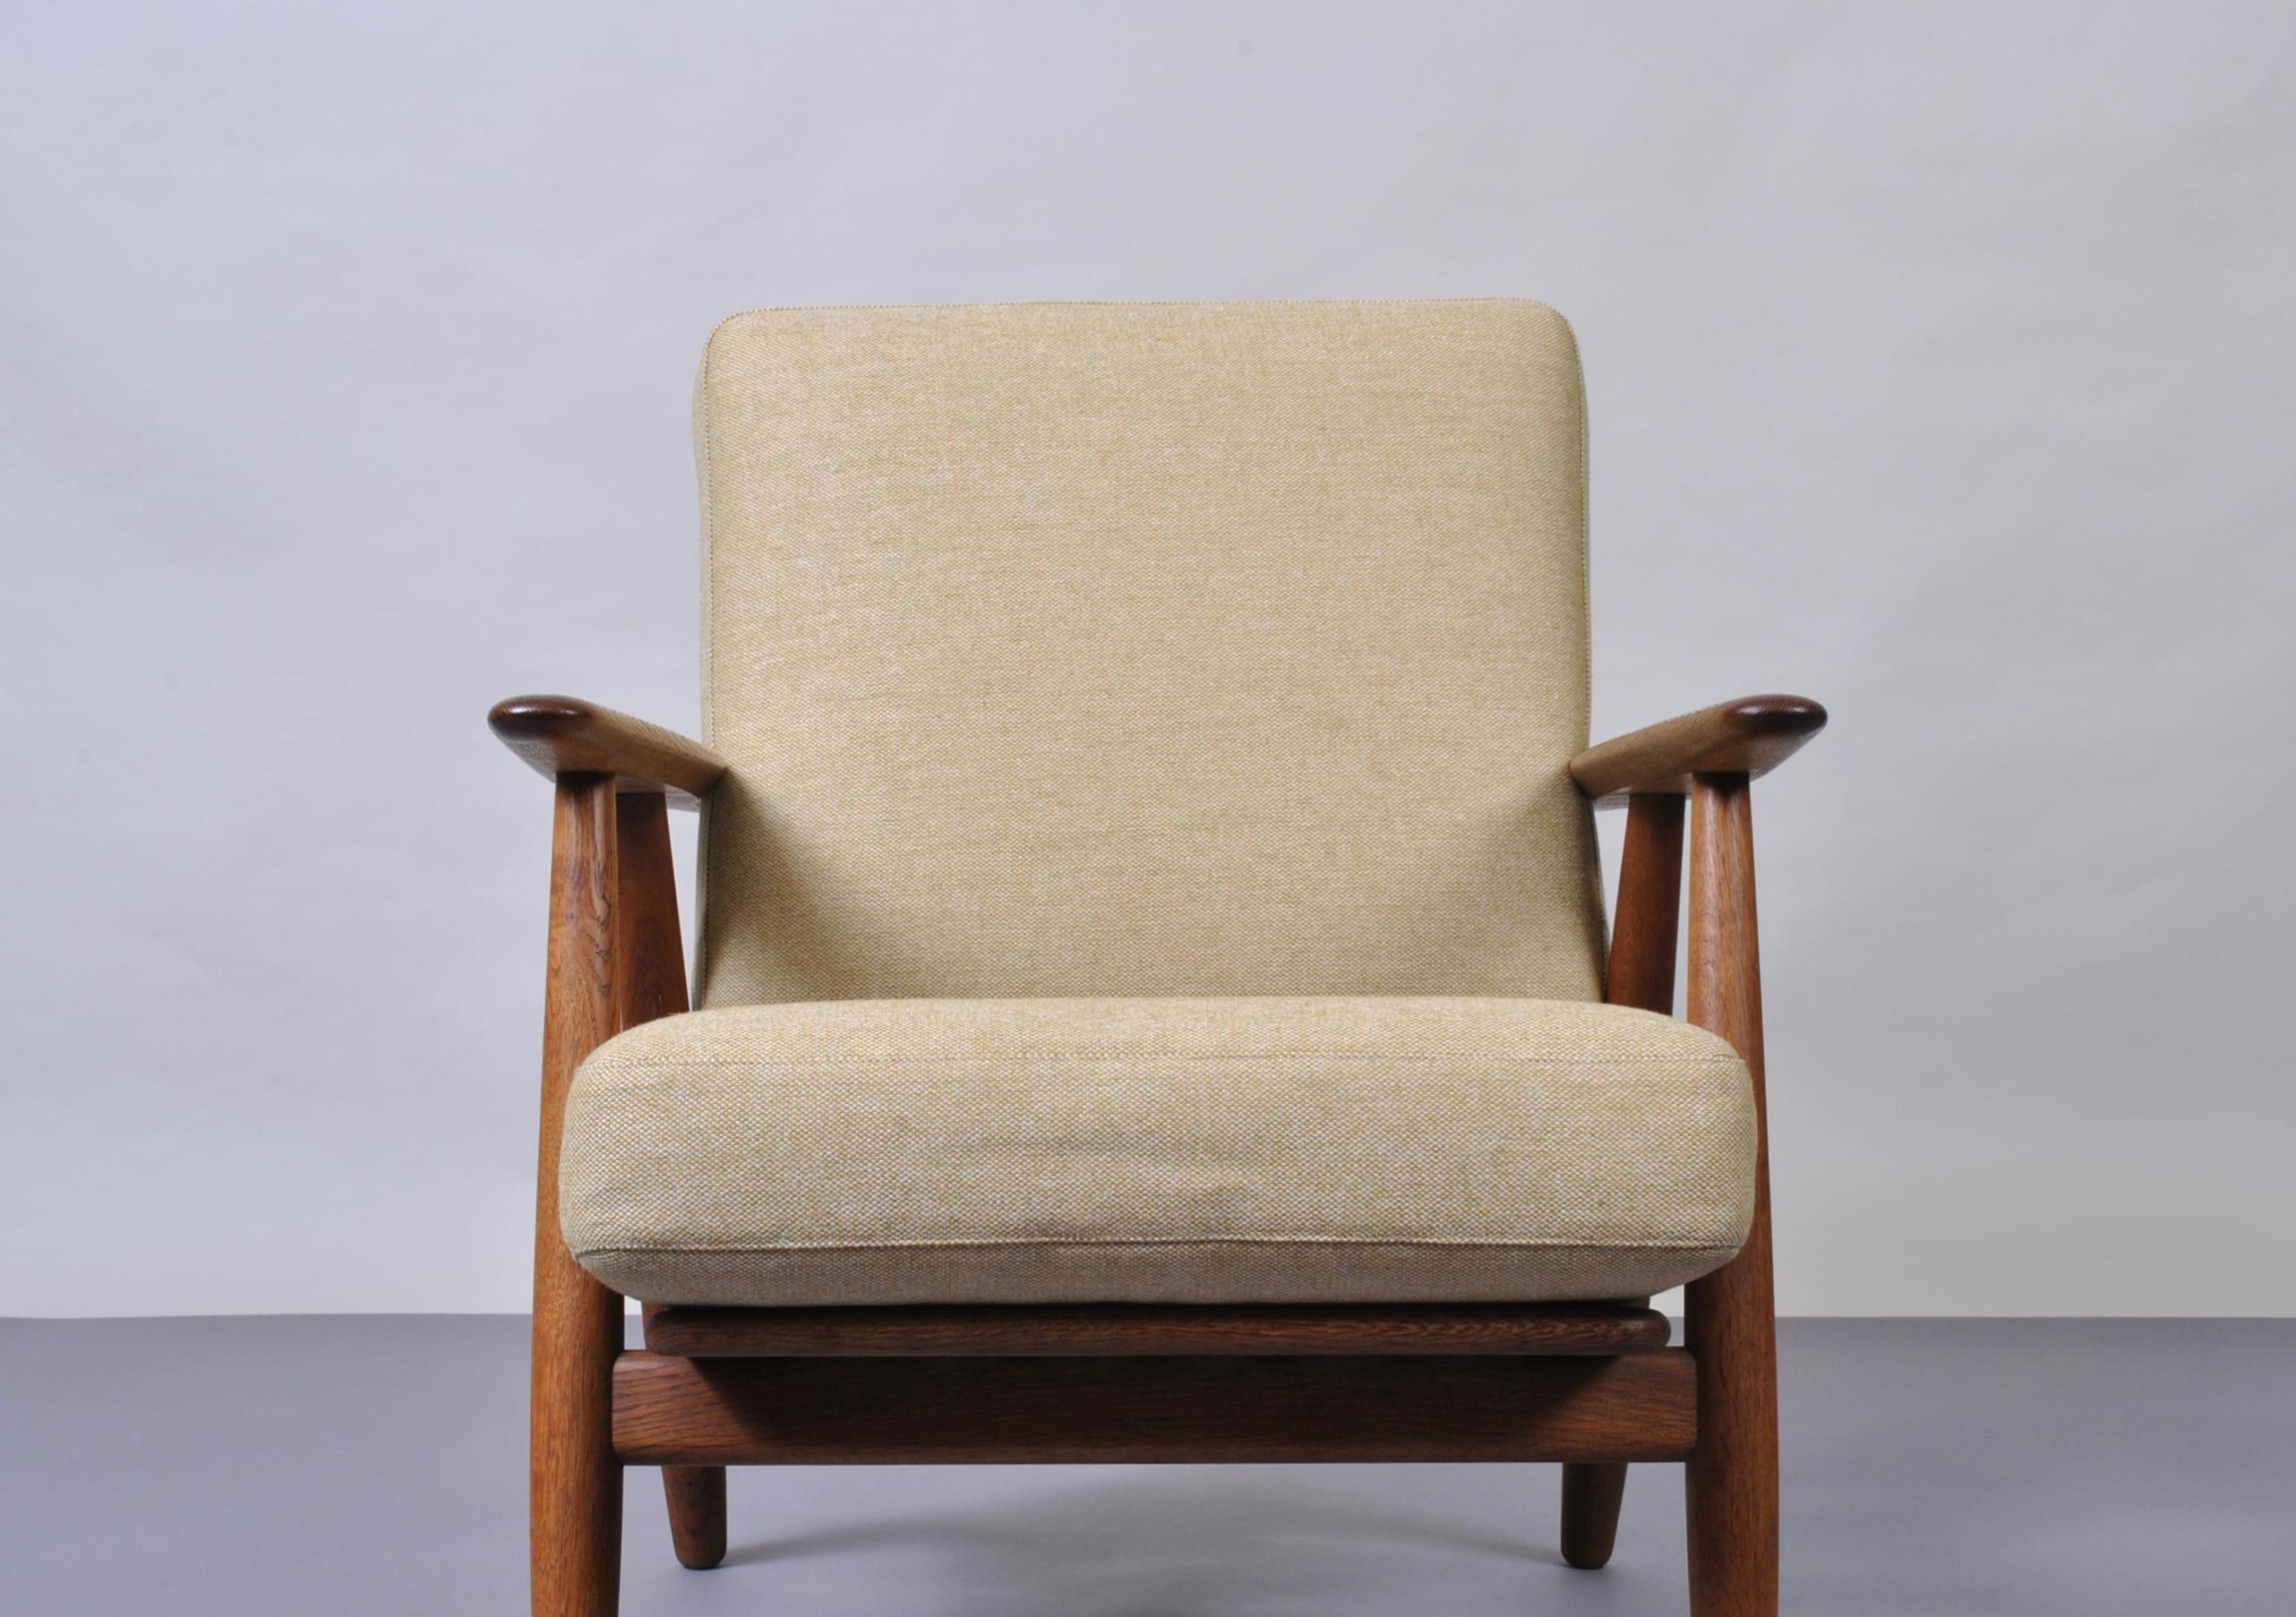 Hans J Wegner, Original GE240 Lounge Chair, Fumed Oak, New Upholstery  6